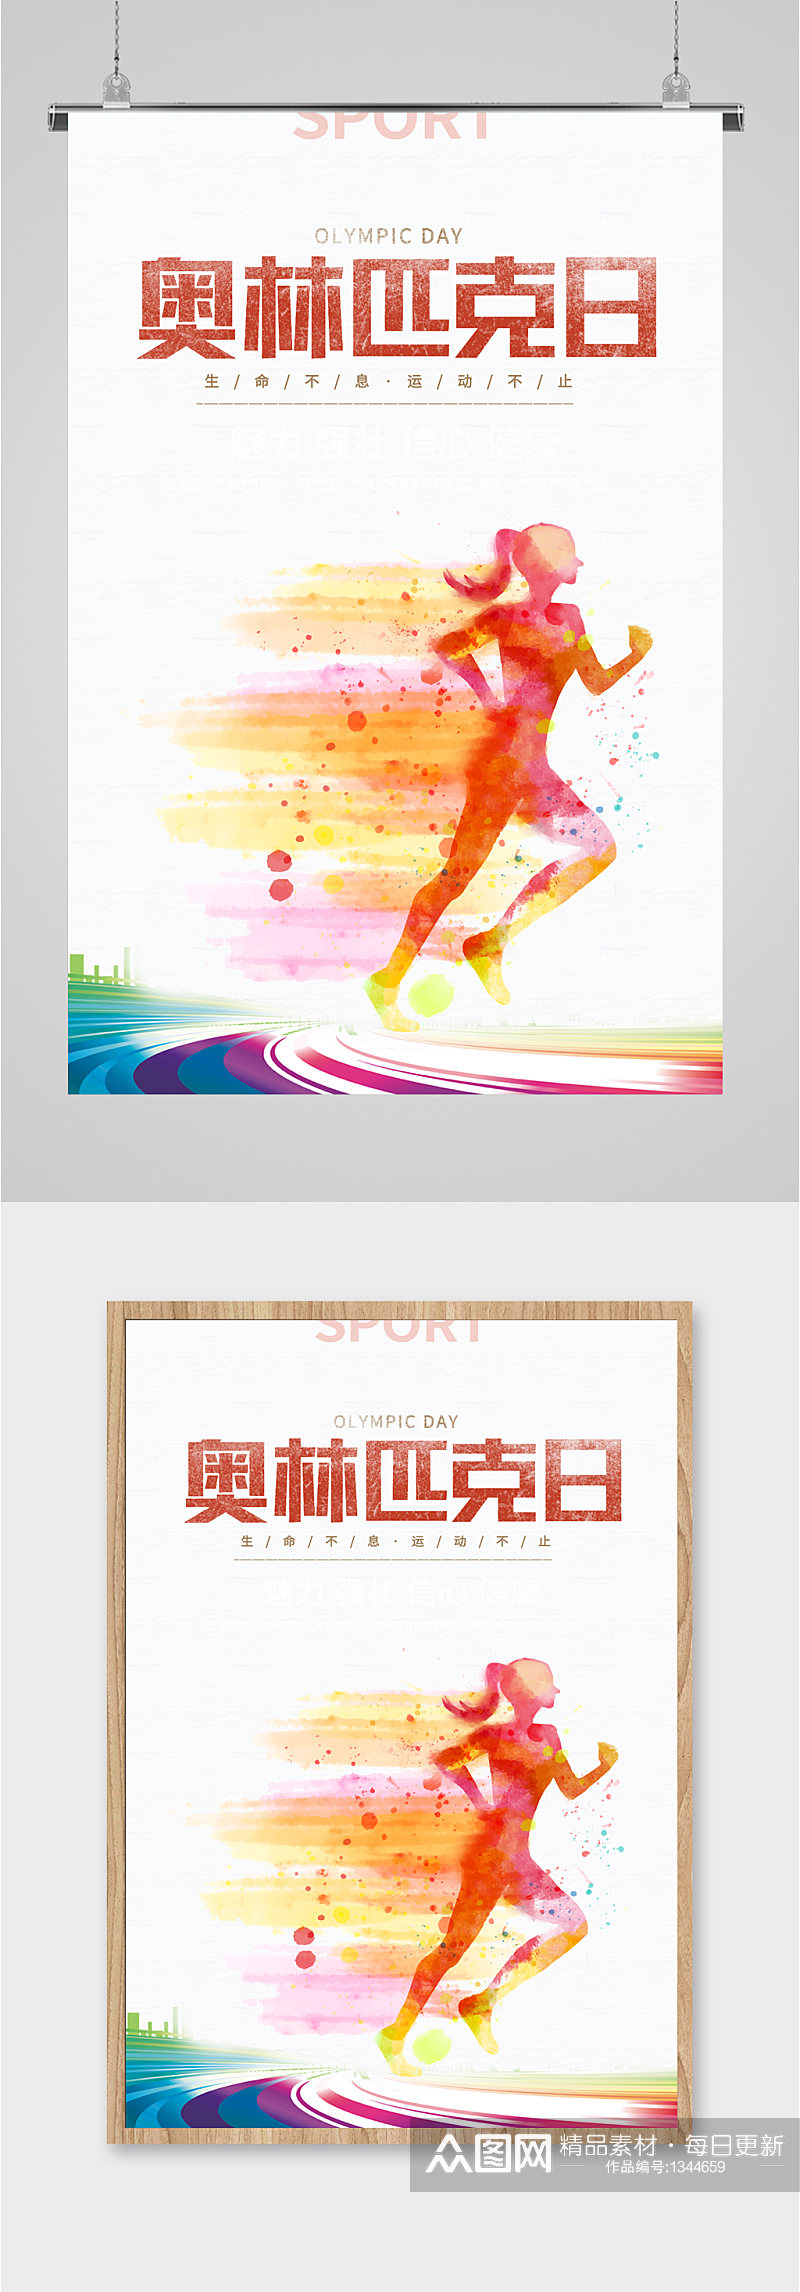 奥林匹克日宣传海报展板素材